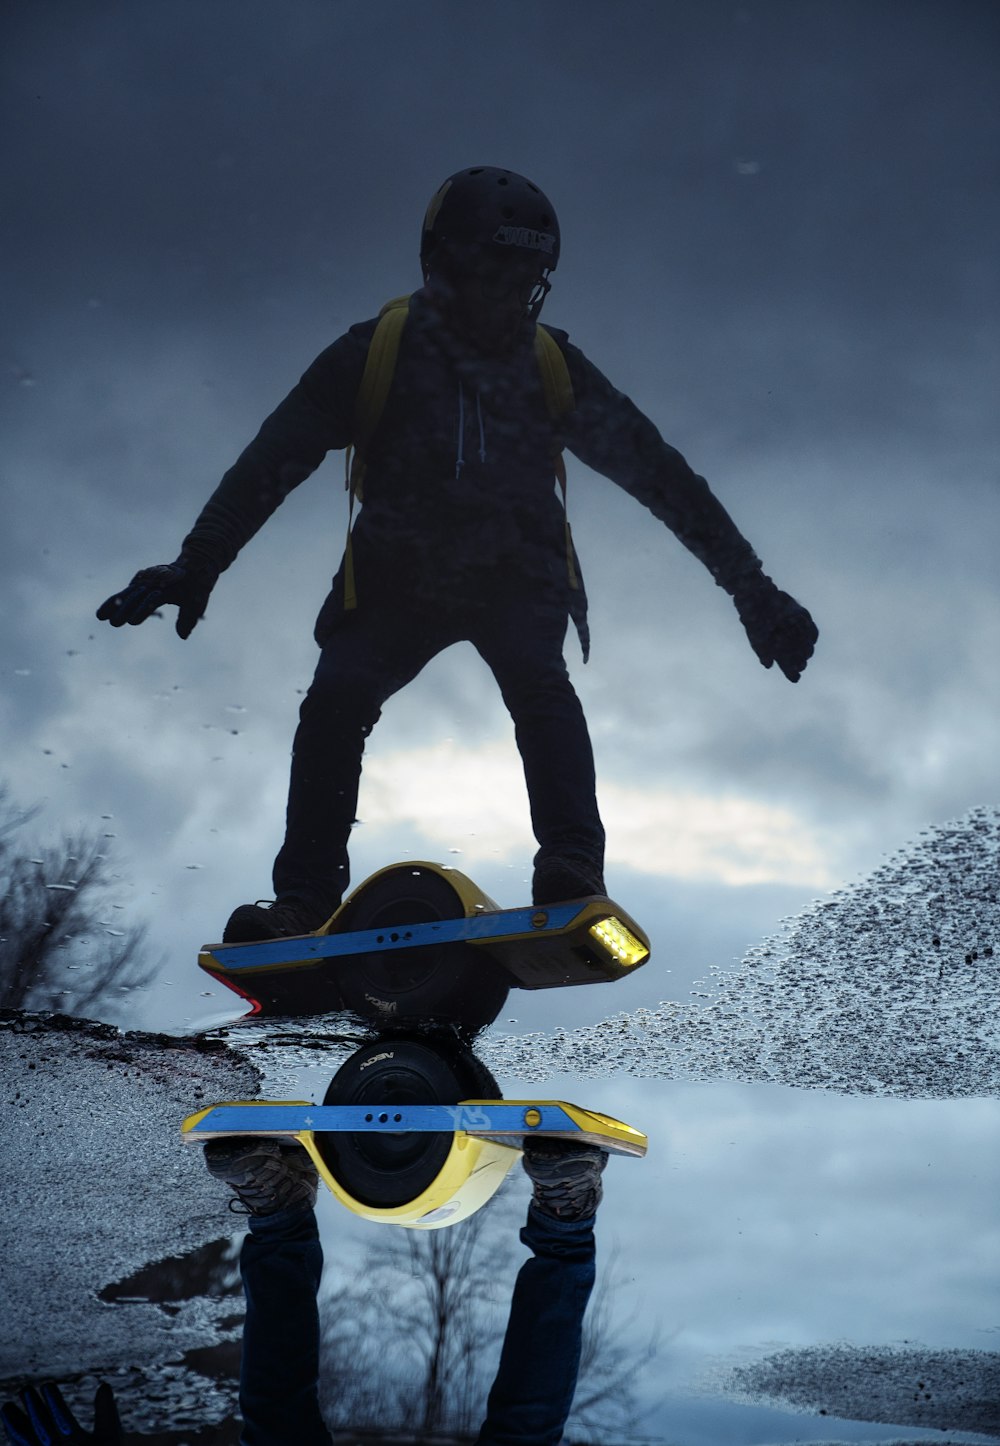 Mann in schwarzer Jacke und blauer Jeans fährt tagsüber blau-gelbes Snowboard